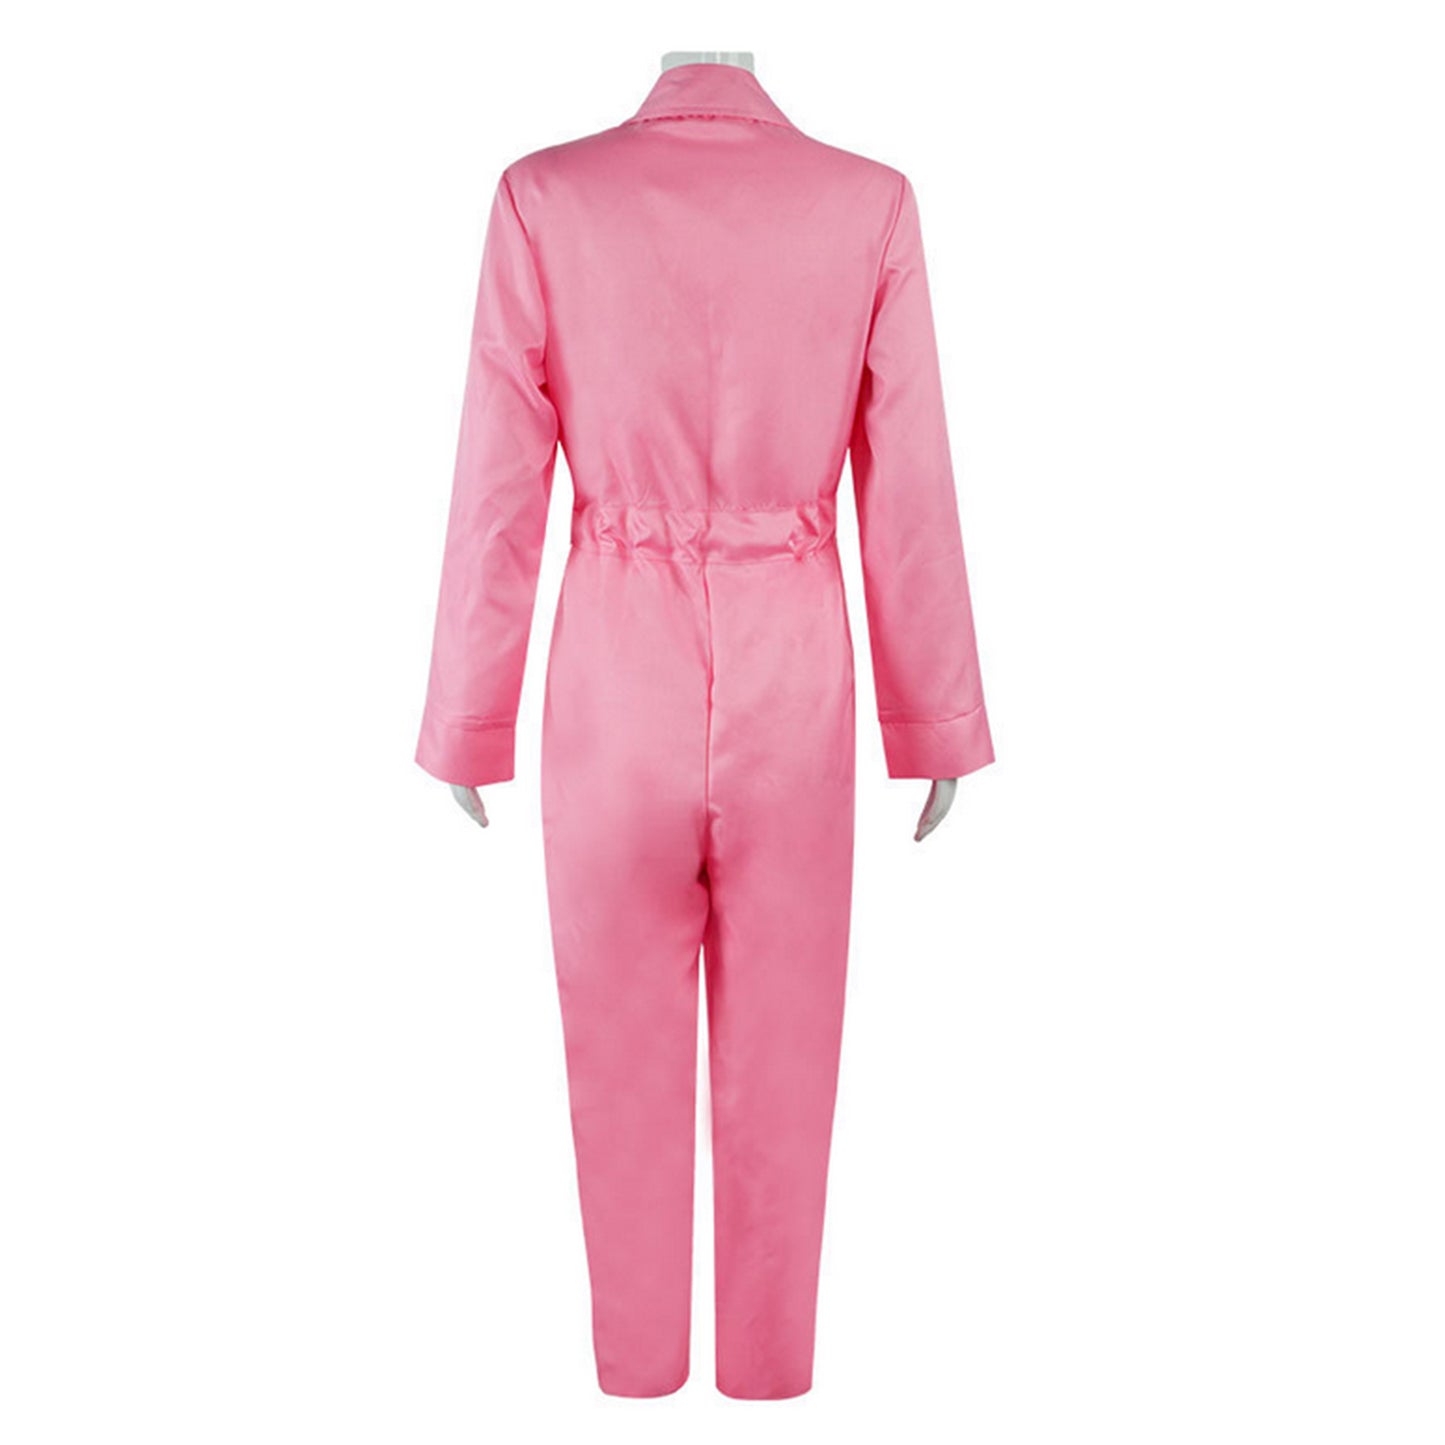 Barbie Cosplay Costume Cheerleader Pink Suit Uniform Jumpsuit for Women Girls